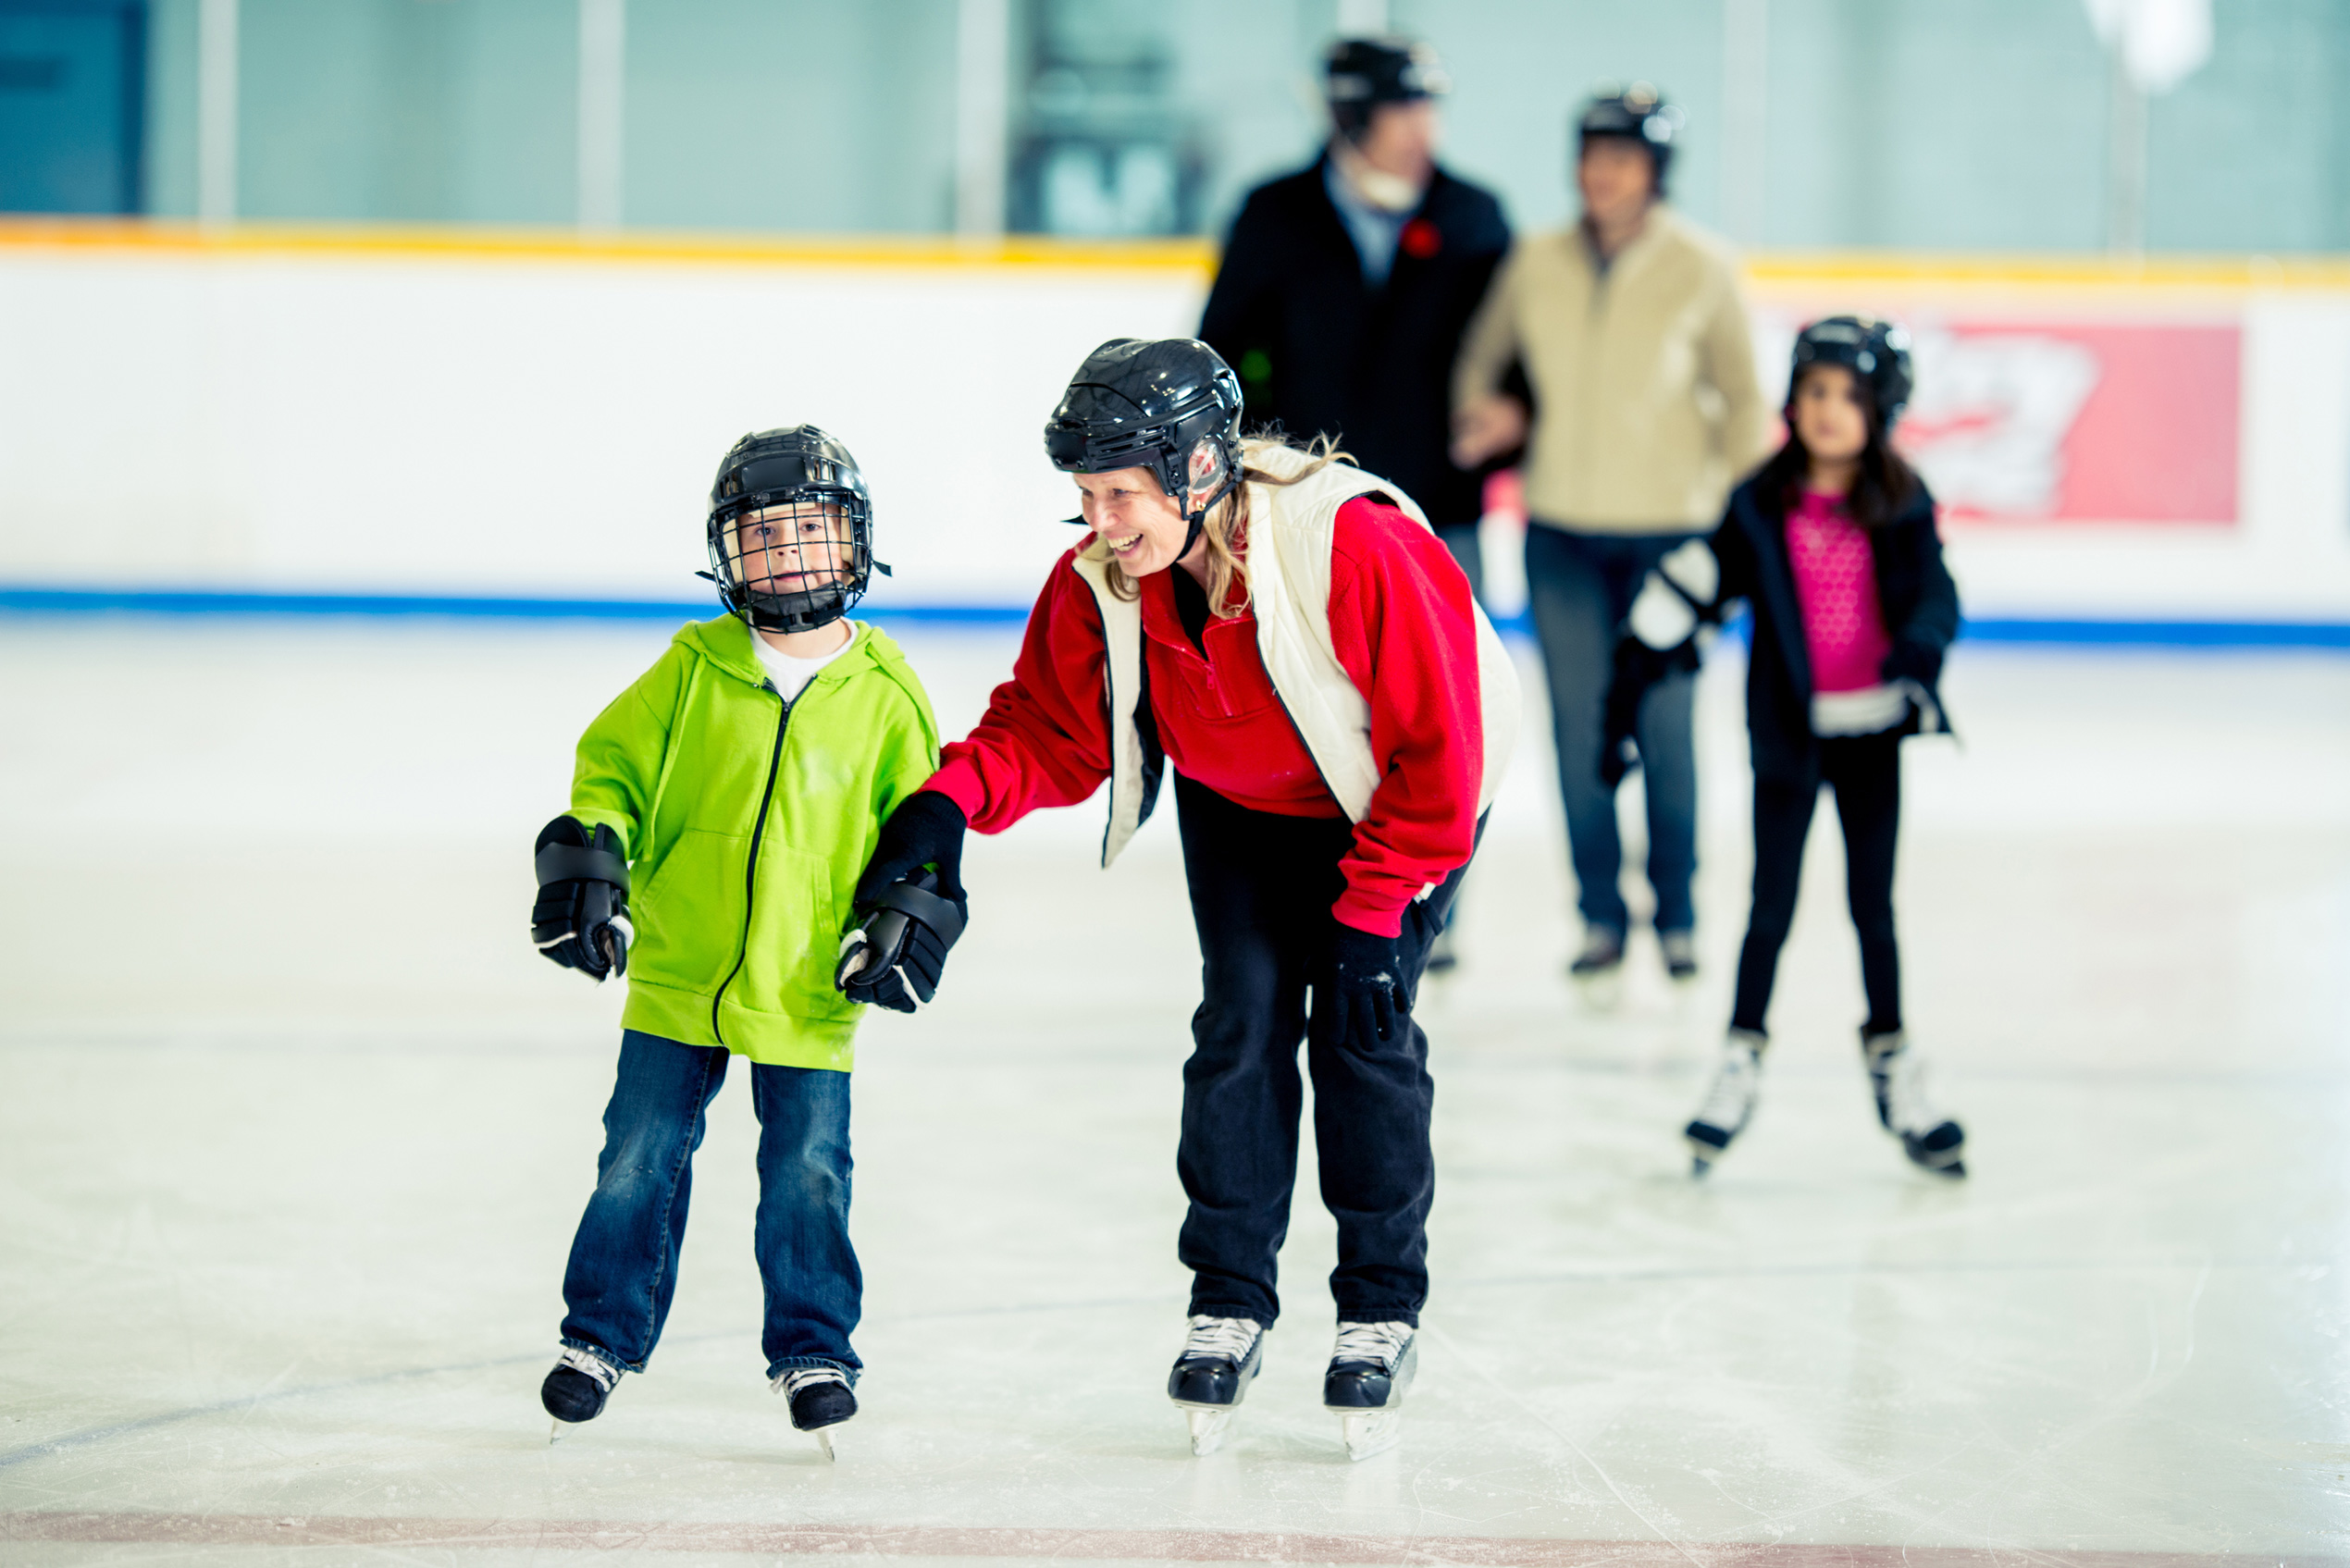 Family skating at an ice rink